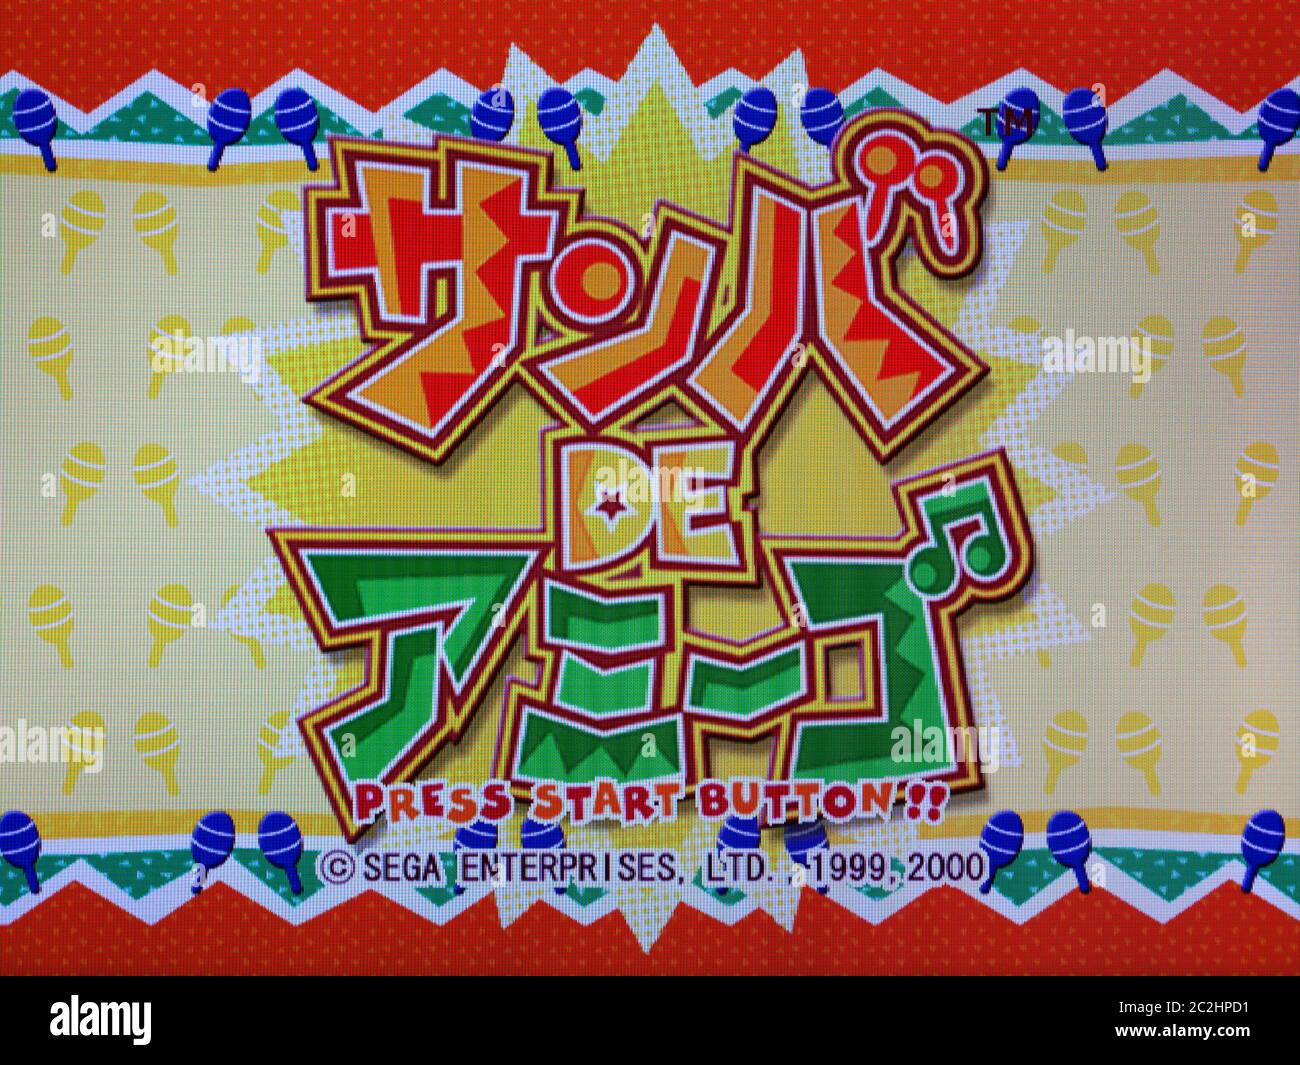 Samba de Amigo - Sega Dreamcast Videogame - Editorial use only Stock Photo